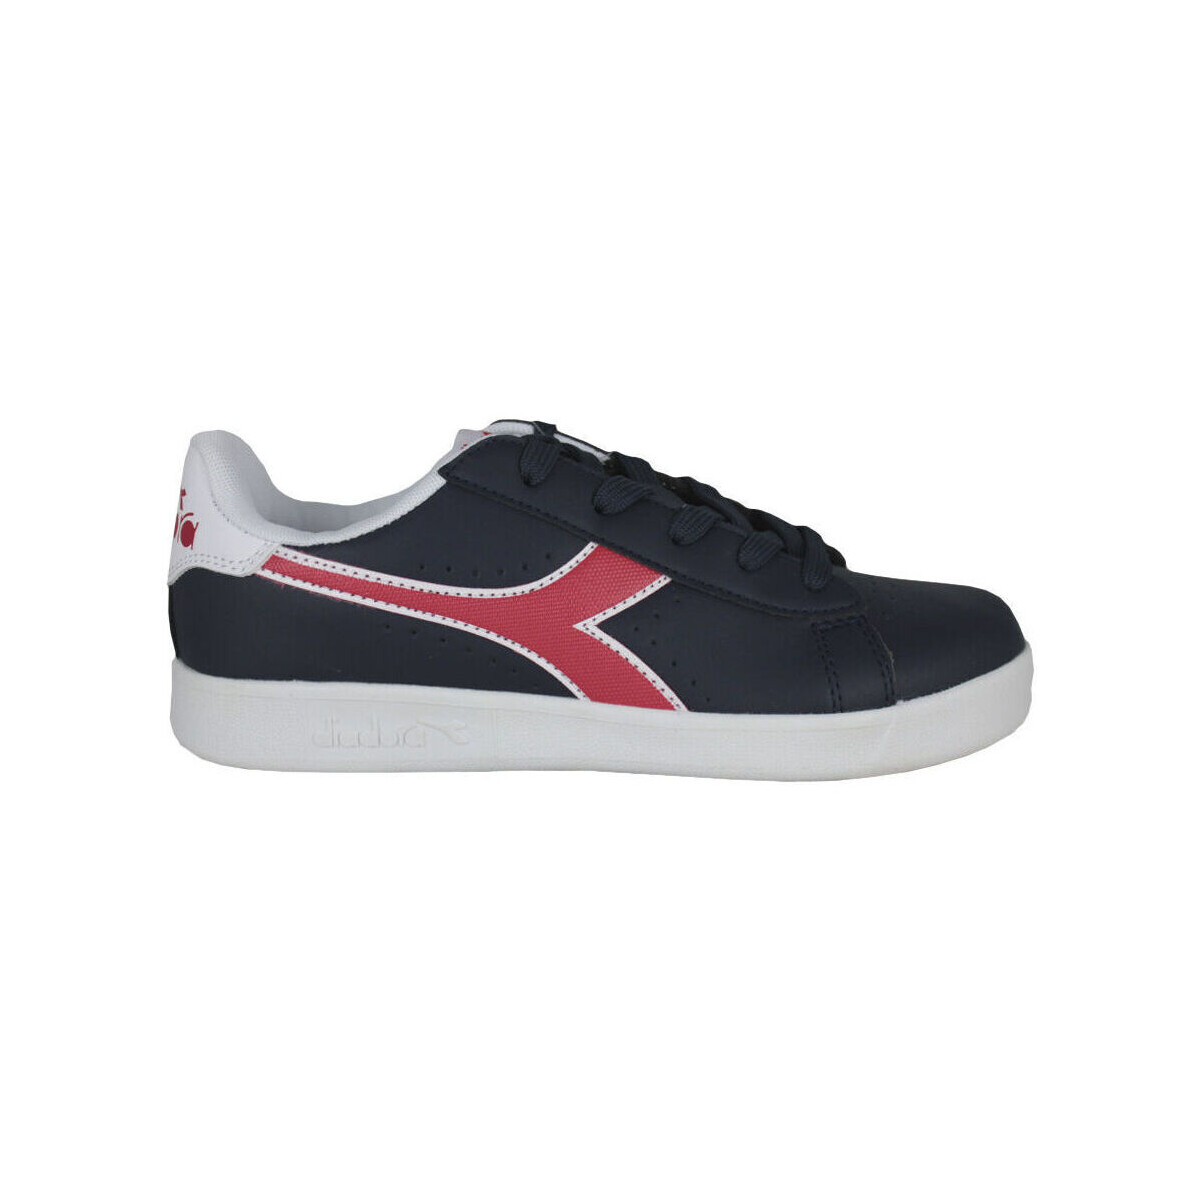 Sneakers Diadora 101.173323 01 C8594 Black iris/Poppy red/White